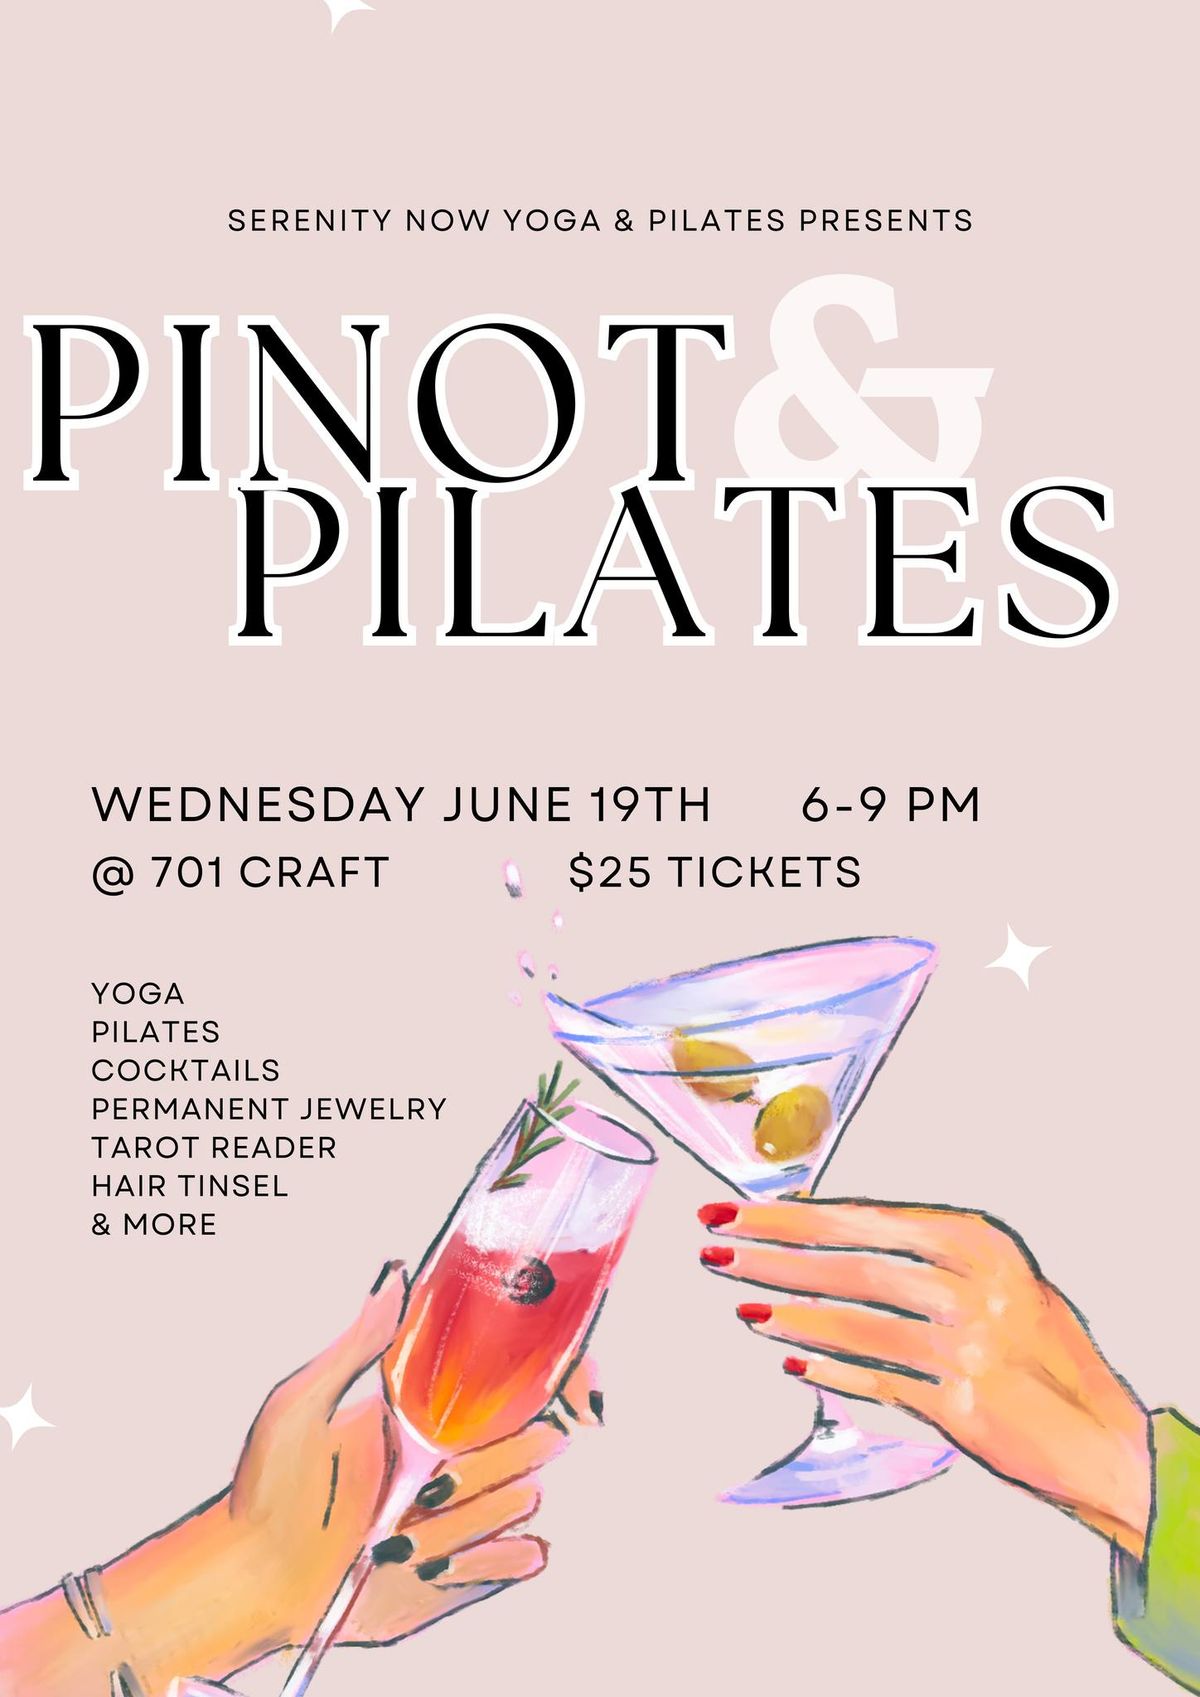 Pinot & Pilates